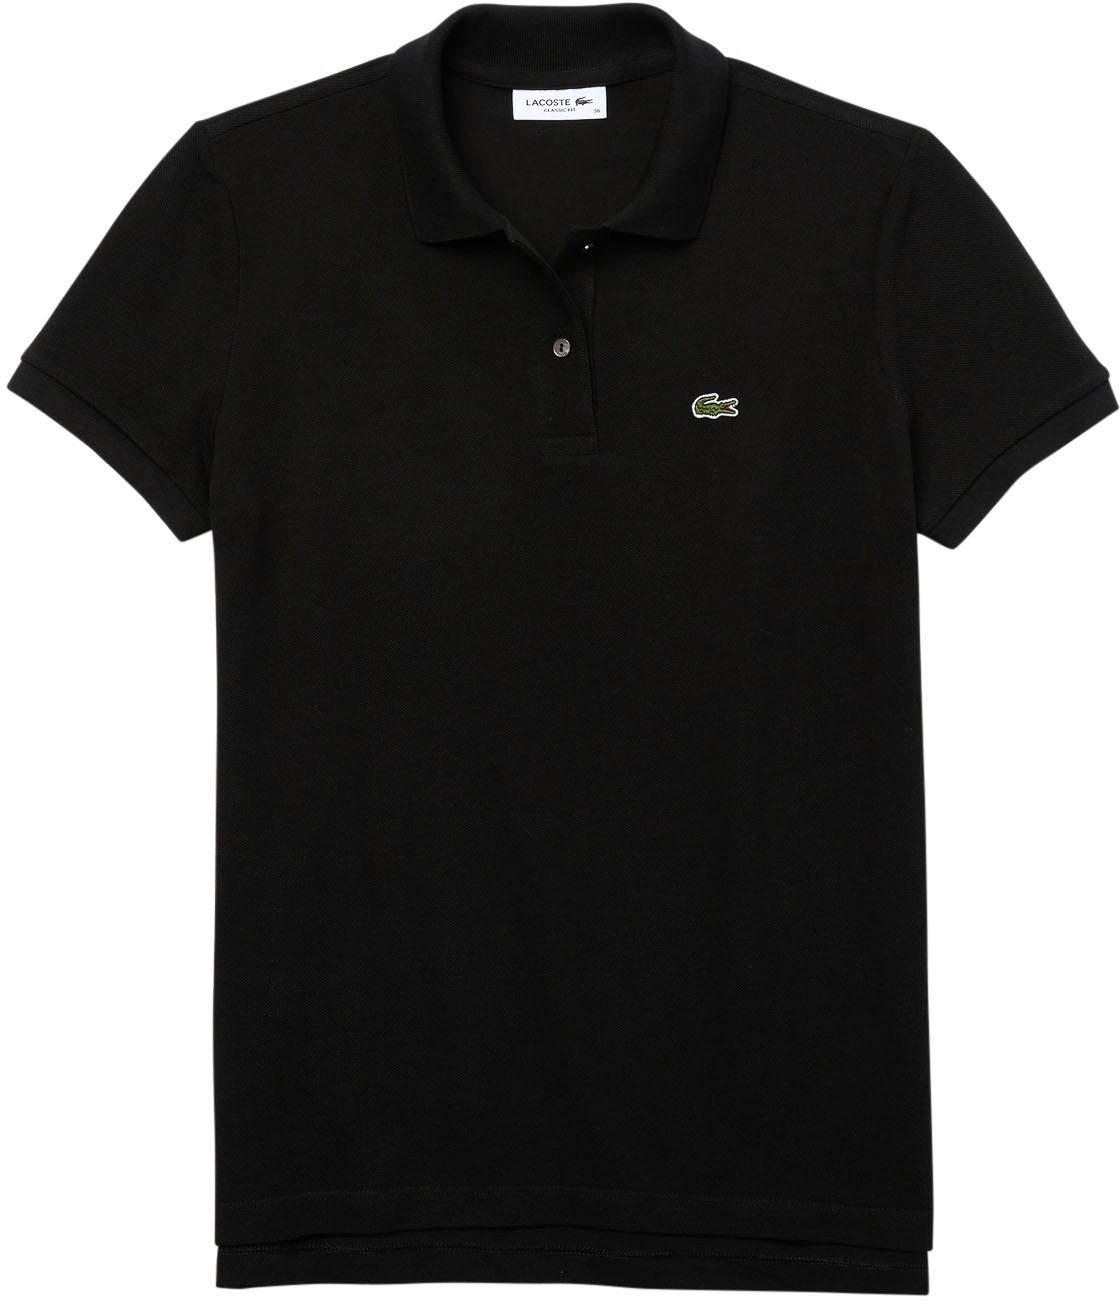 Lacoste mit Lacoste-Logo-Patch der schwarz auf Brust Poloshirt